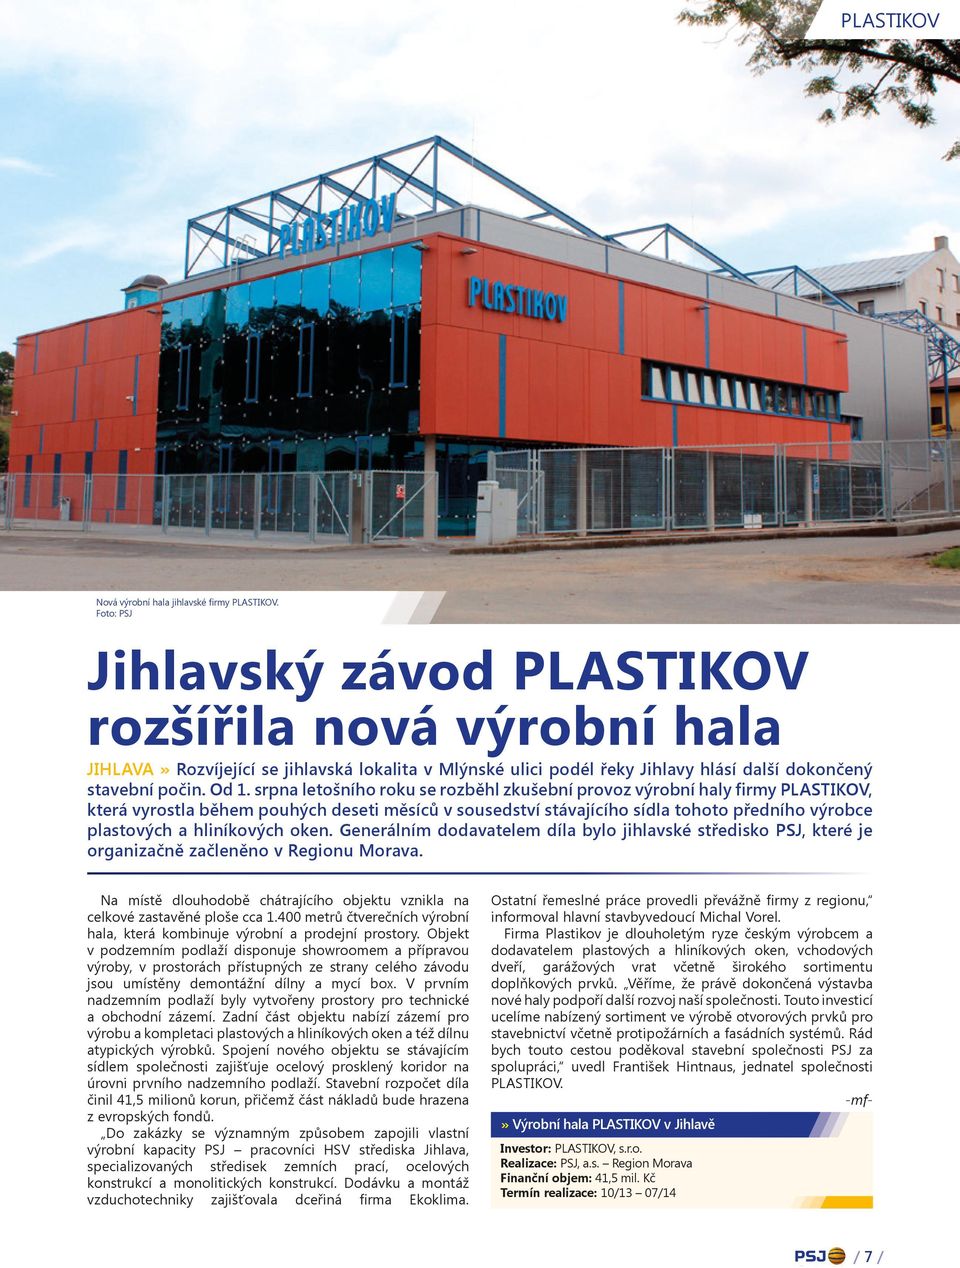 srpna letošního roku se rozběhl zkušební provoz výrobní haly firmy PLASTIKOV, která vyrostla během pouhých deseti měsíců v sousedství stávajícího sídla tohoto předního výrobce plastových a